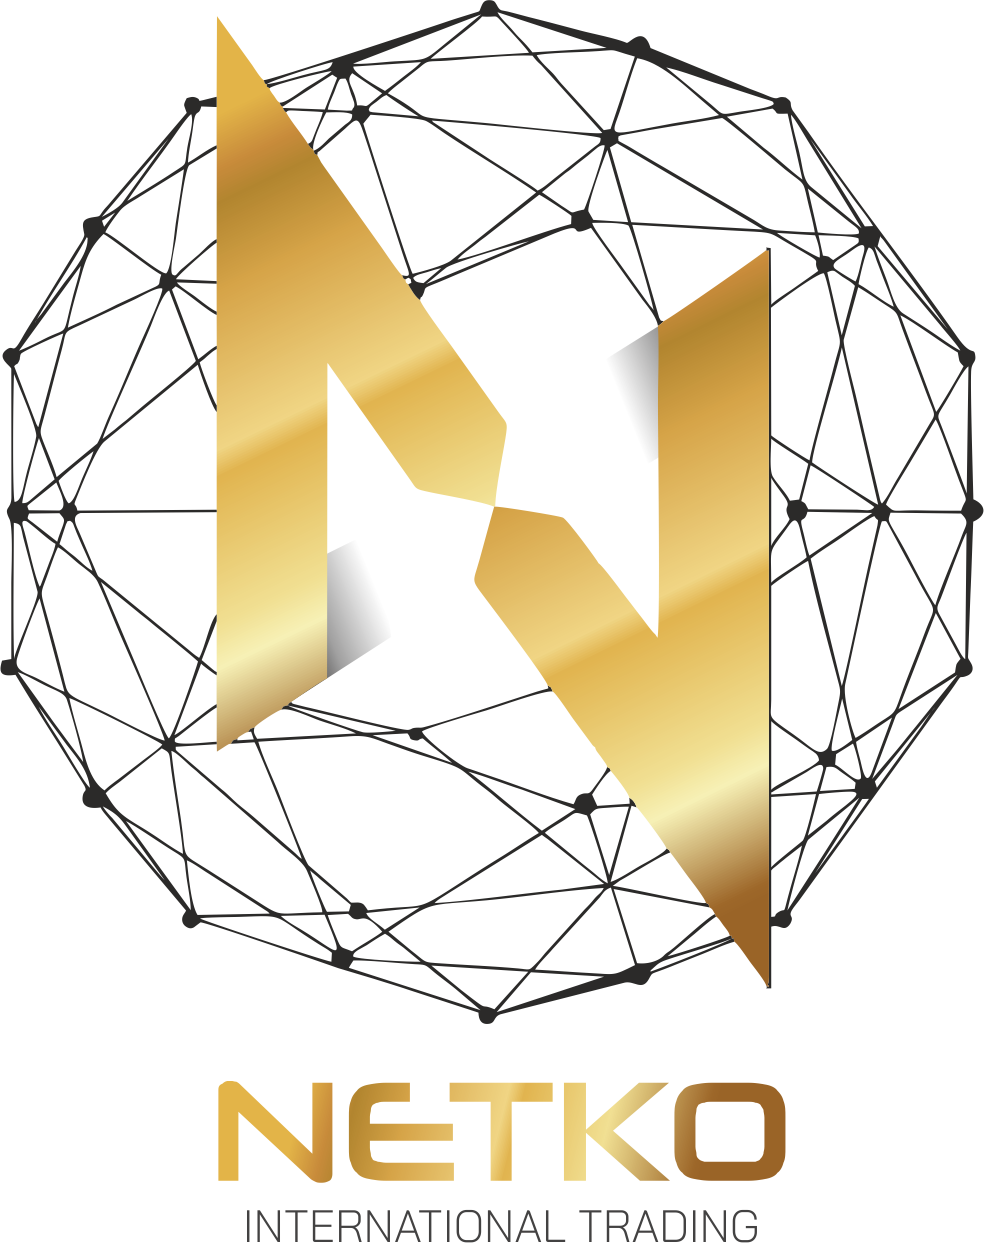 Netko International